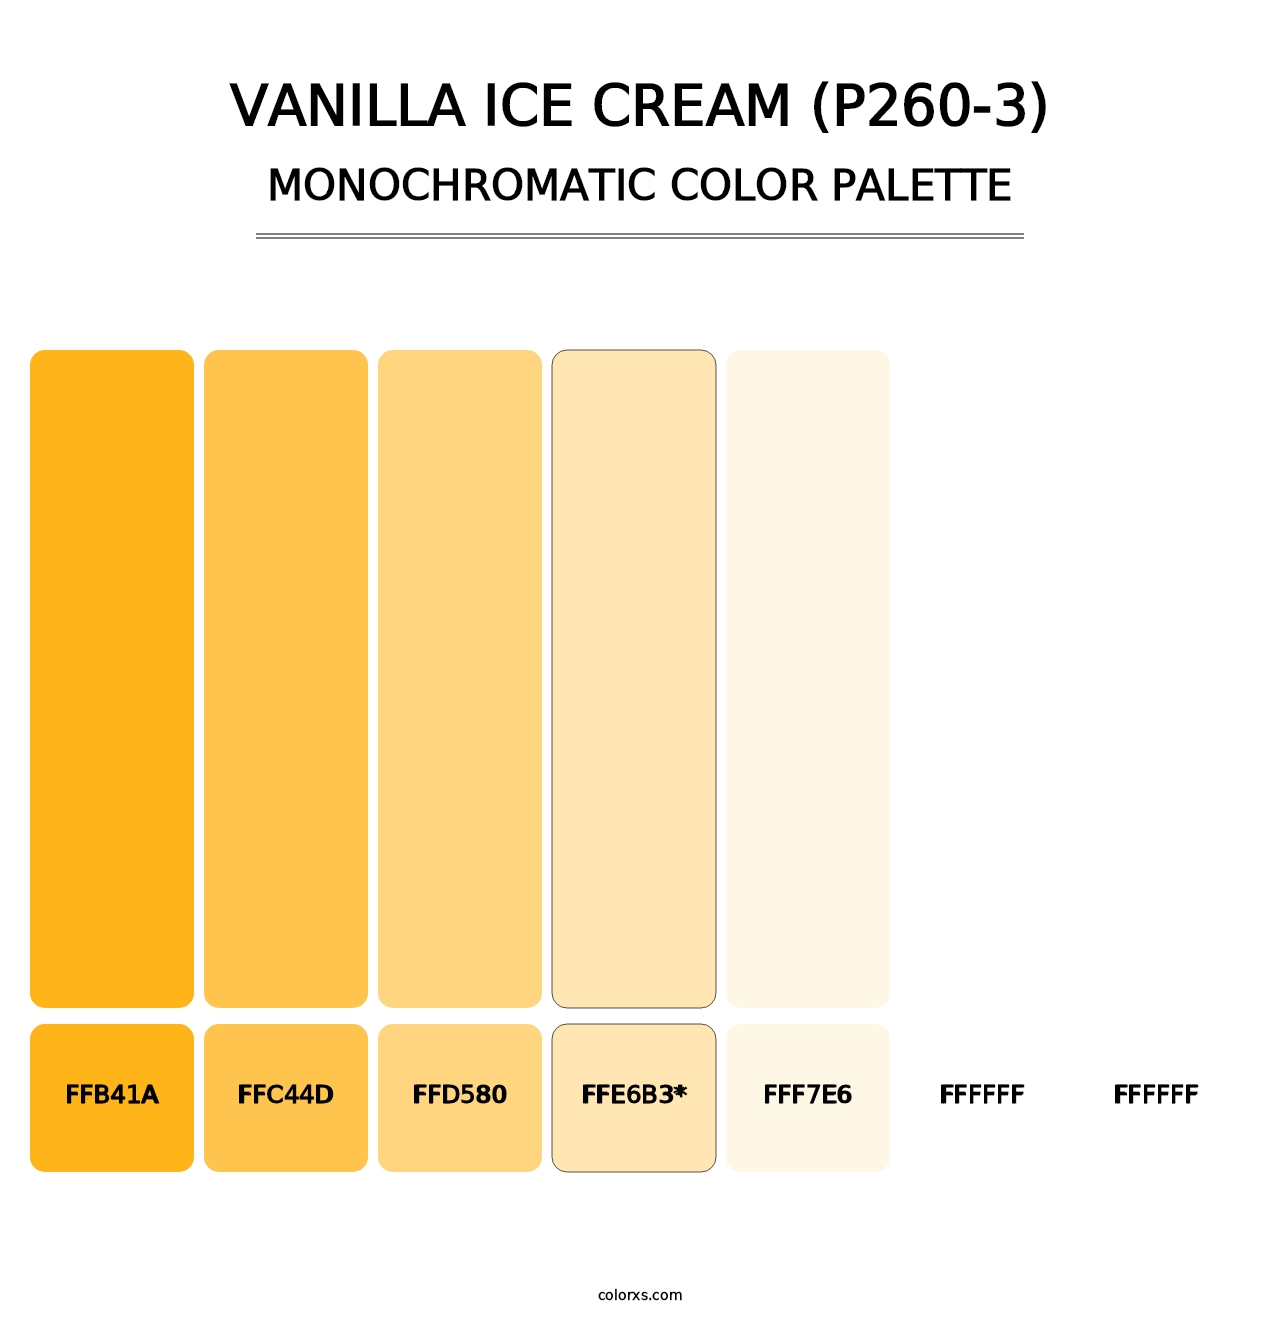 Vanilla Ice Cream (P260-3) - Monochromatic Color Palette